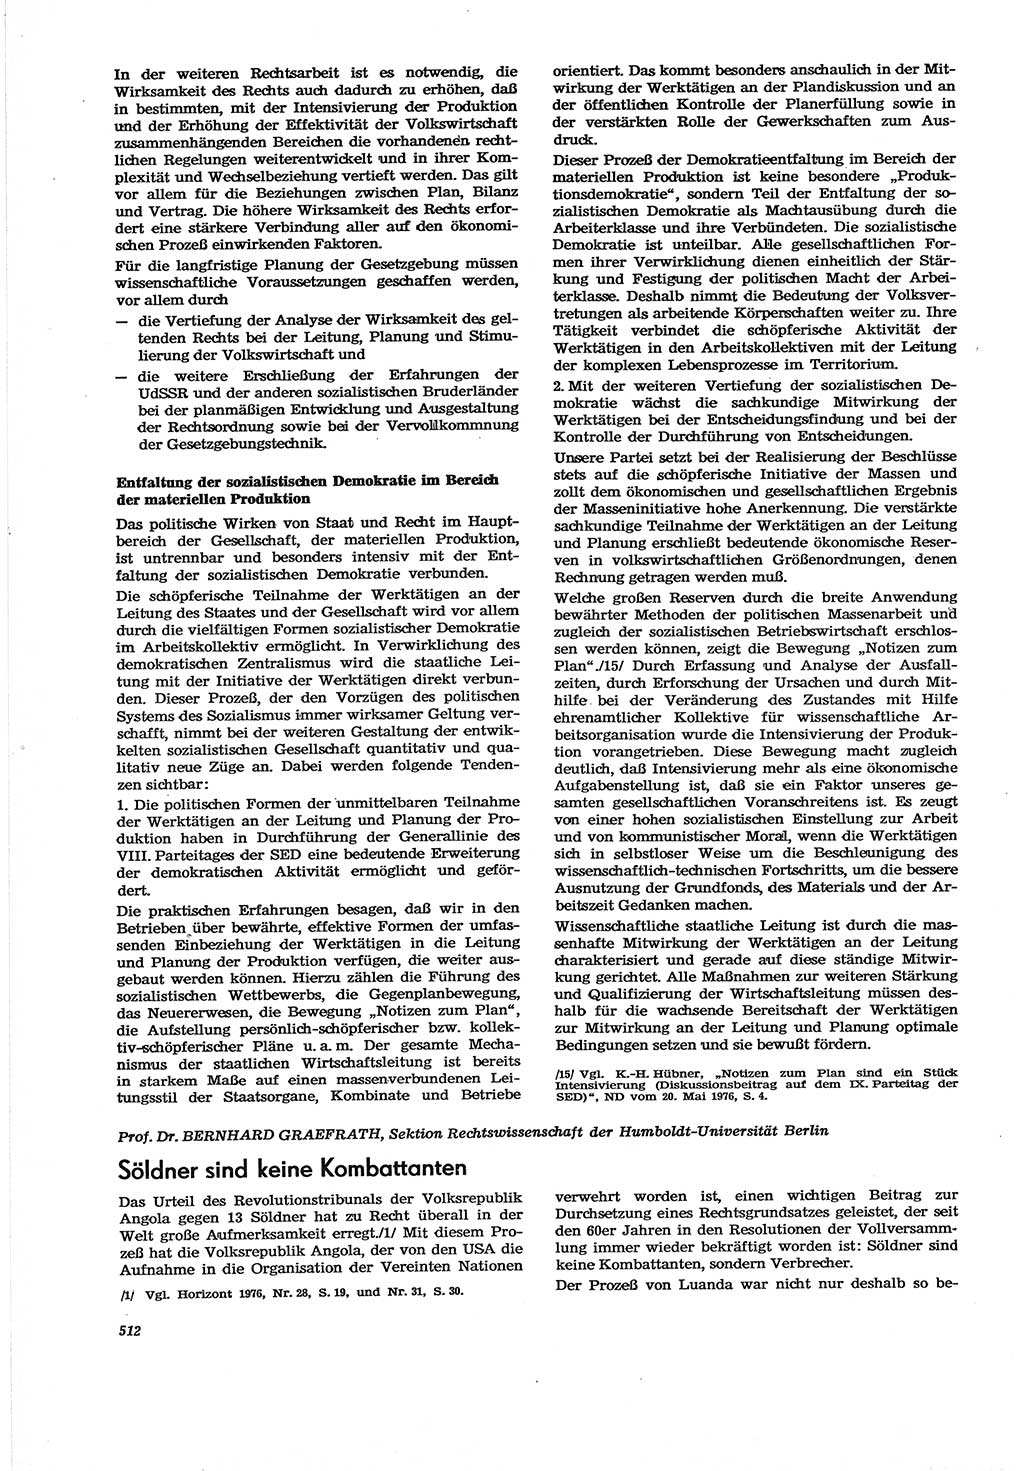 Neue Justiz (NJ), Zeitschrift für Recht und Rechtswissenschaft [Deutsche Demokratische Republik (DDR)], 30. Jahrgang 1976, Seite 512 (NJ DDR 1976, S. 512)